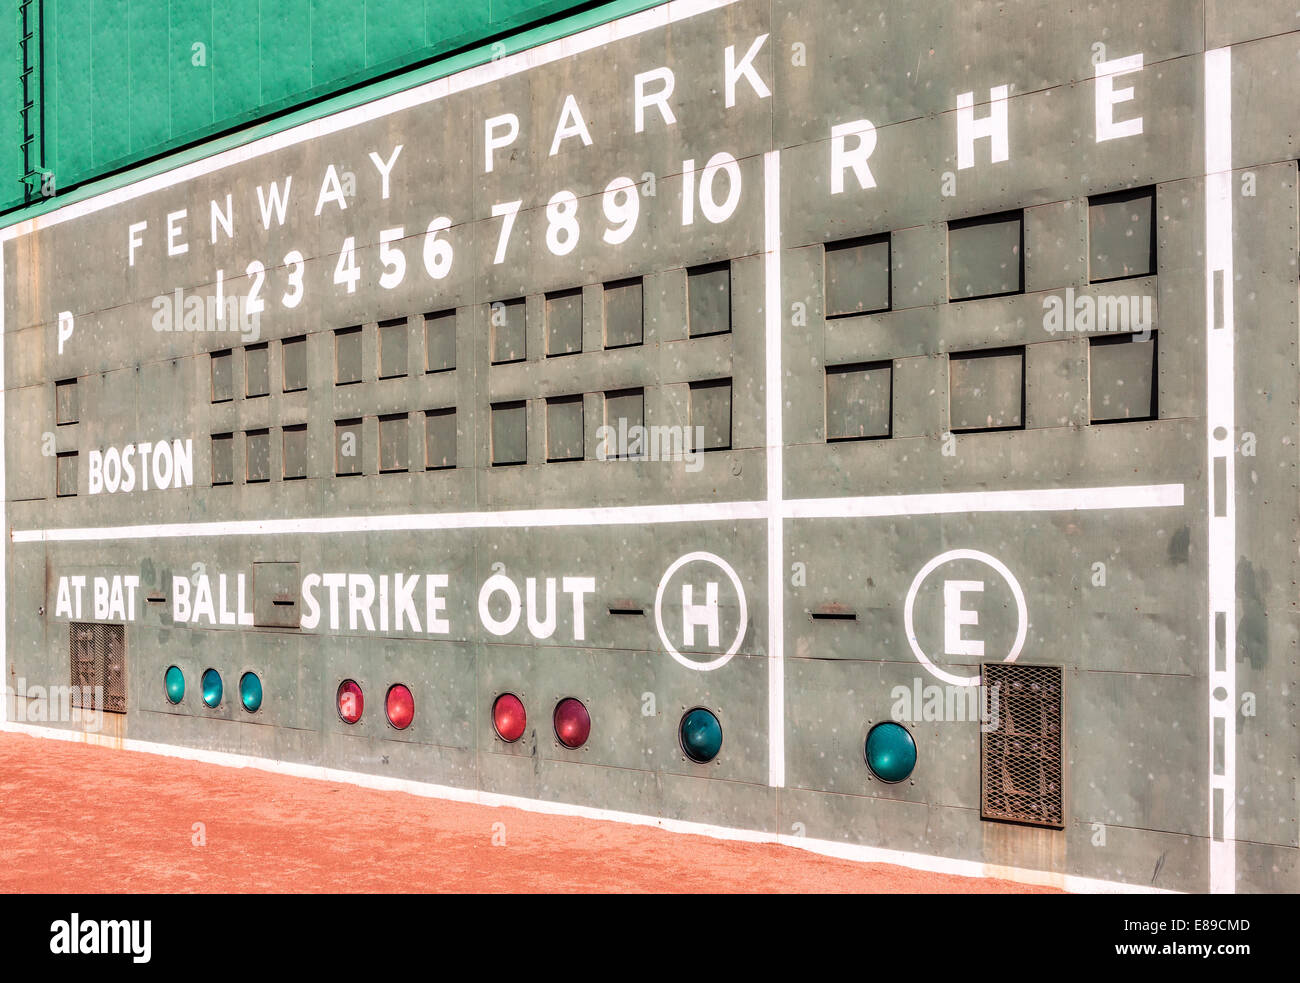 Der Fenway Park Green Monster manuelle Anzeigetafel. Das grüne Monster ist ein beliebter Spitzname für die 37 Fuß, 2 Zoll hohes Feld links an der Wand am Fenway Park, Heimat der Boston Red Sox Baseball Team. Es ist immer noch mit der Hand von hinten an die Wand im Verlauf des Spiels aktualisiert. enway Park die Heimat der Boston Red Sox Major League Baseball Team ist seit 1912 geöffnet und ist das älteste Baseballstadion in der MLB. Die Morse Code, der von oben nach unten in die weißen Linien der amerikanischen Liga Anzeiger erscheint, sind die Initialen des ehemaligen Inhaber Thomas A. Yawkey und Jean R. Yawkey. Stockfoto